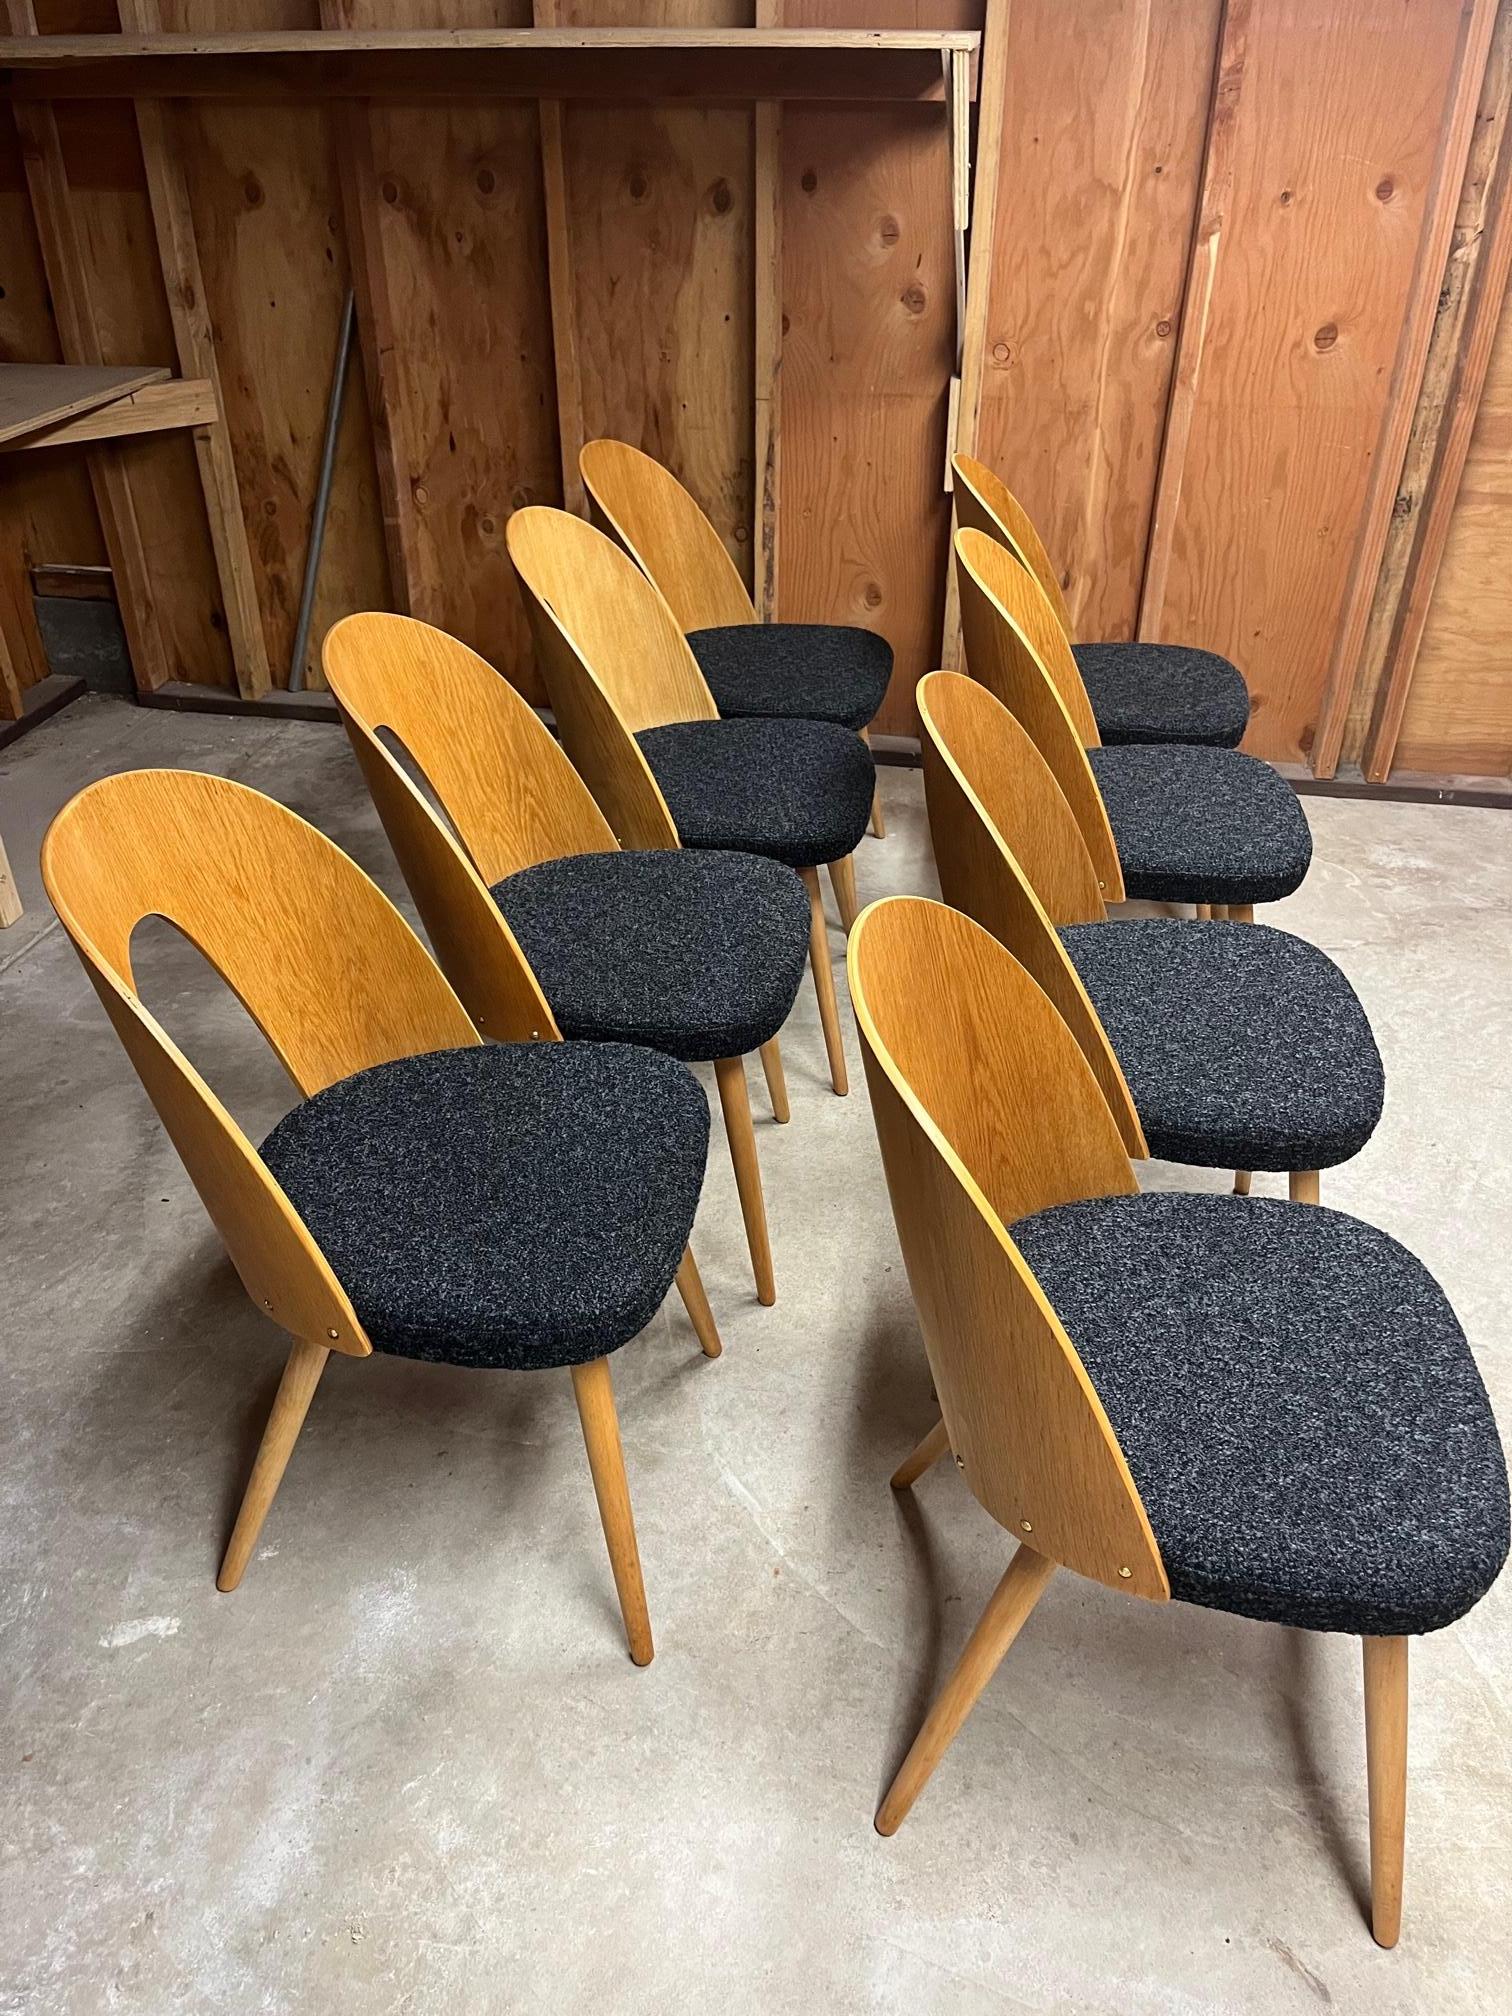 Ensemble de 8 chaises 
Conçue par Antonin Suman dans les années 1960 pour Tatra en Tchécoslovaquie. 
Bois de frêne avec placage de frêne, siège rembourré. 
Remeublement flambant neuf avec le nouveau bouclier KVADRAT BLACK

Dimensions :
Hauteur du